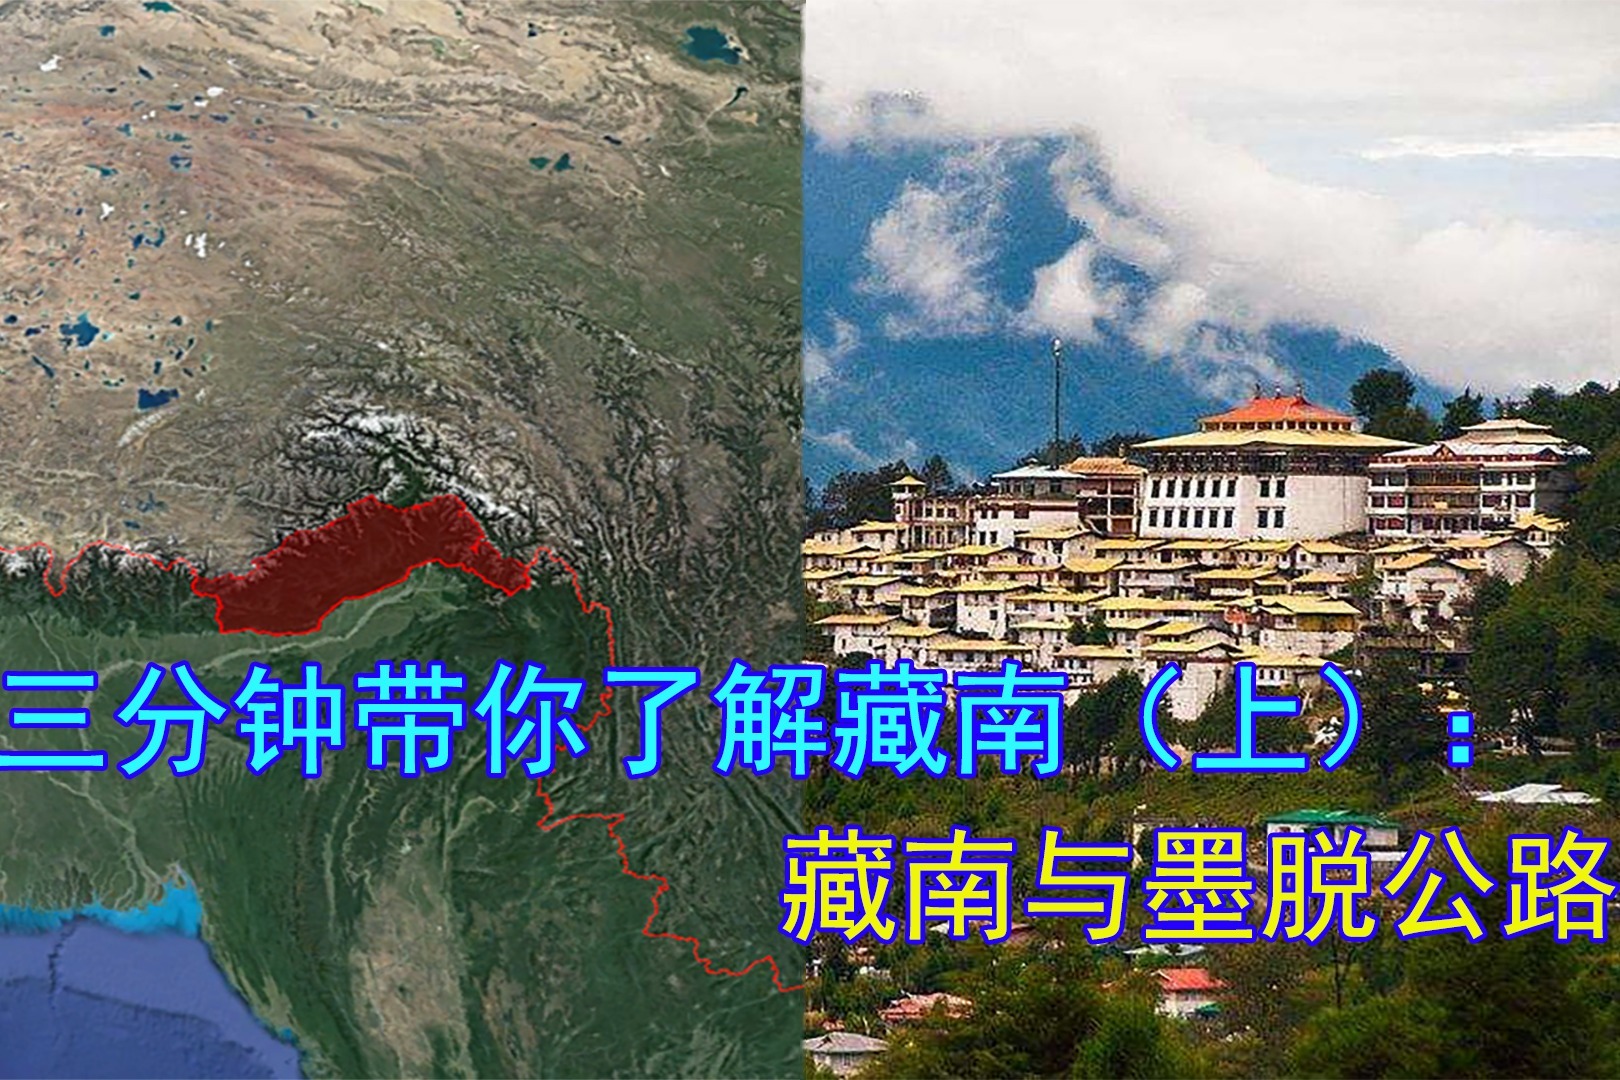 藏南地图对比图片